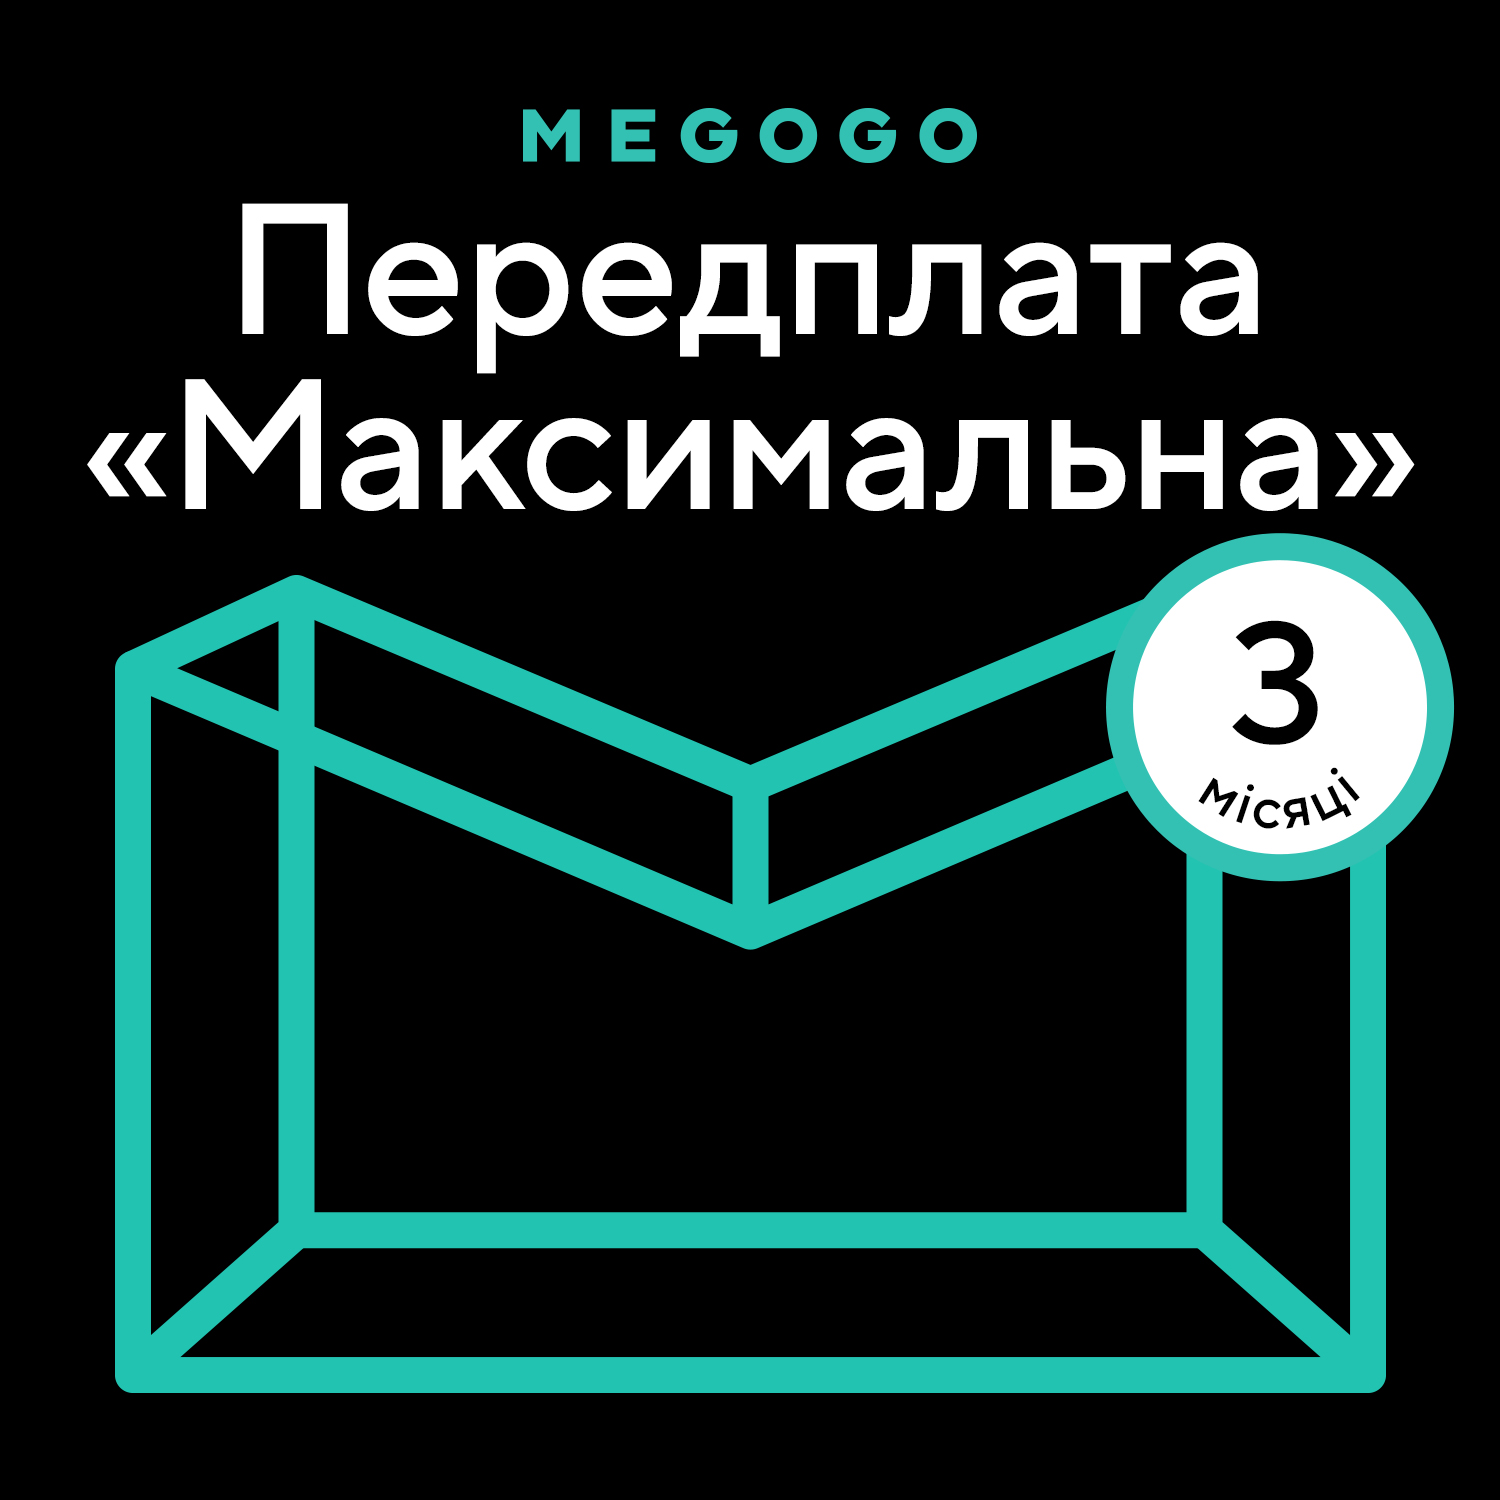 MEGOGO «Кино и ТВ: Максимальная» 3 мес в Киеве